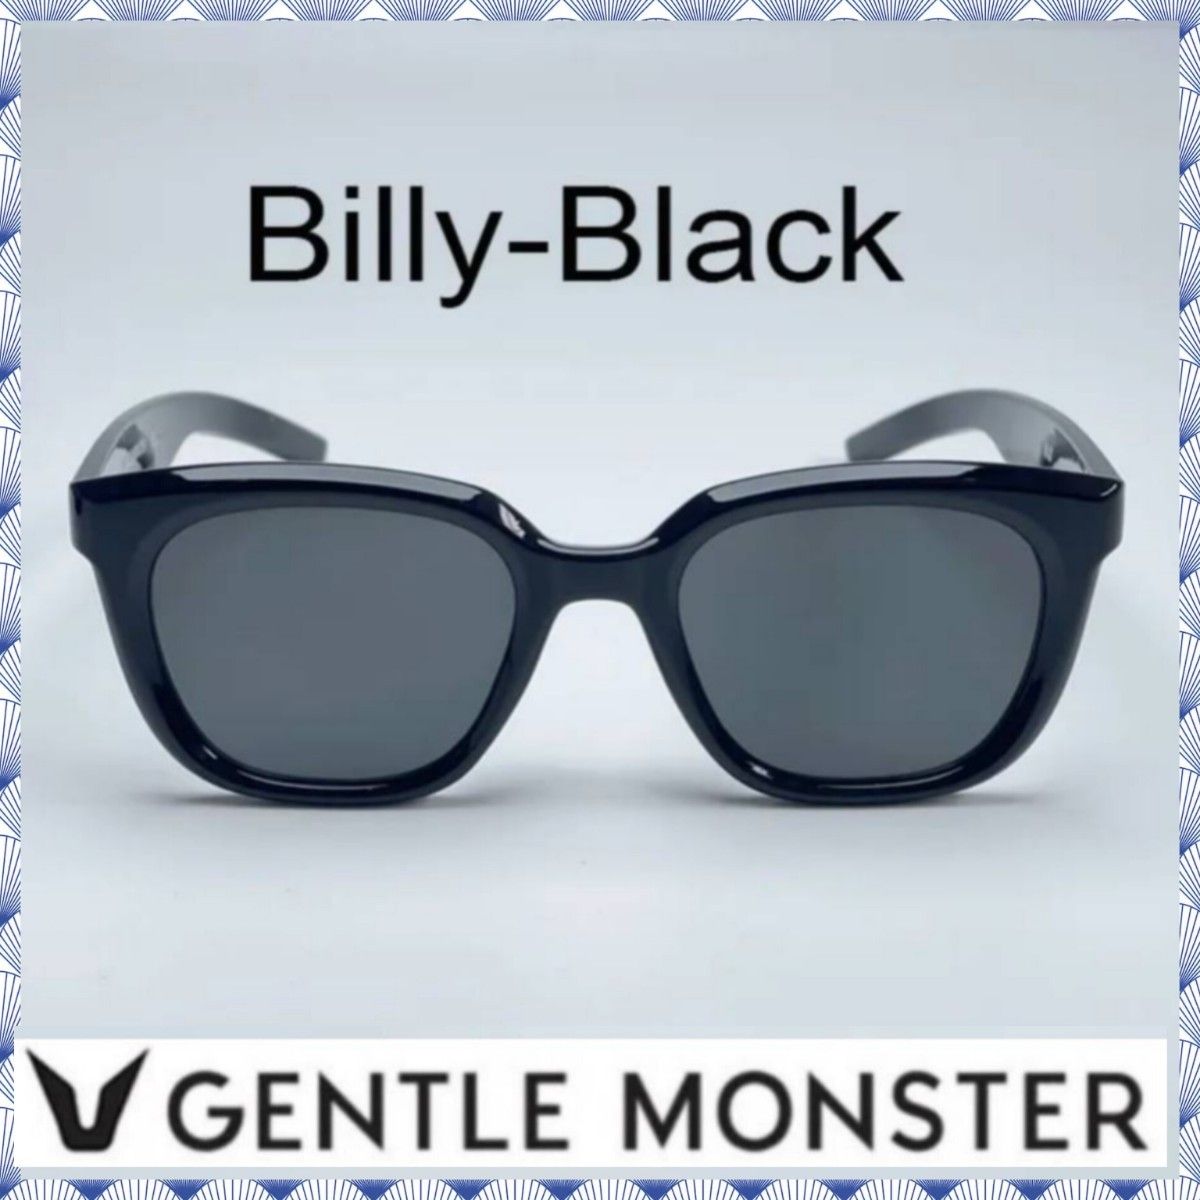 GENTLE MONSTER ジェントルモンスター/ Billy-Black